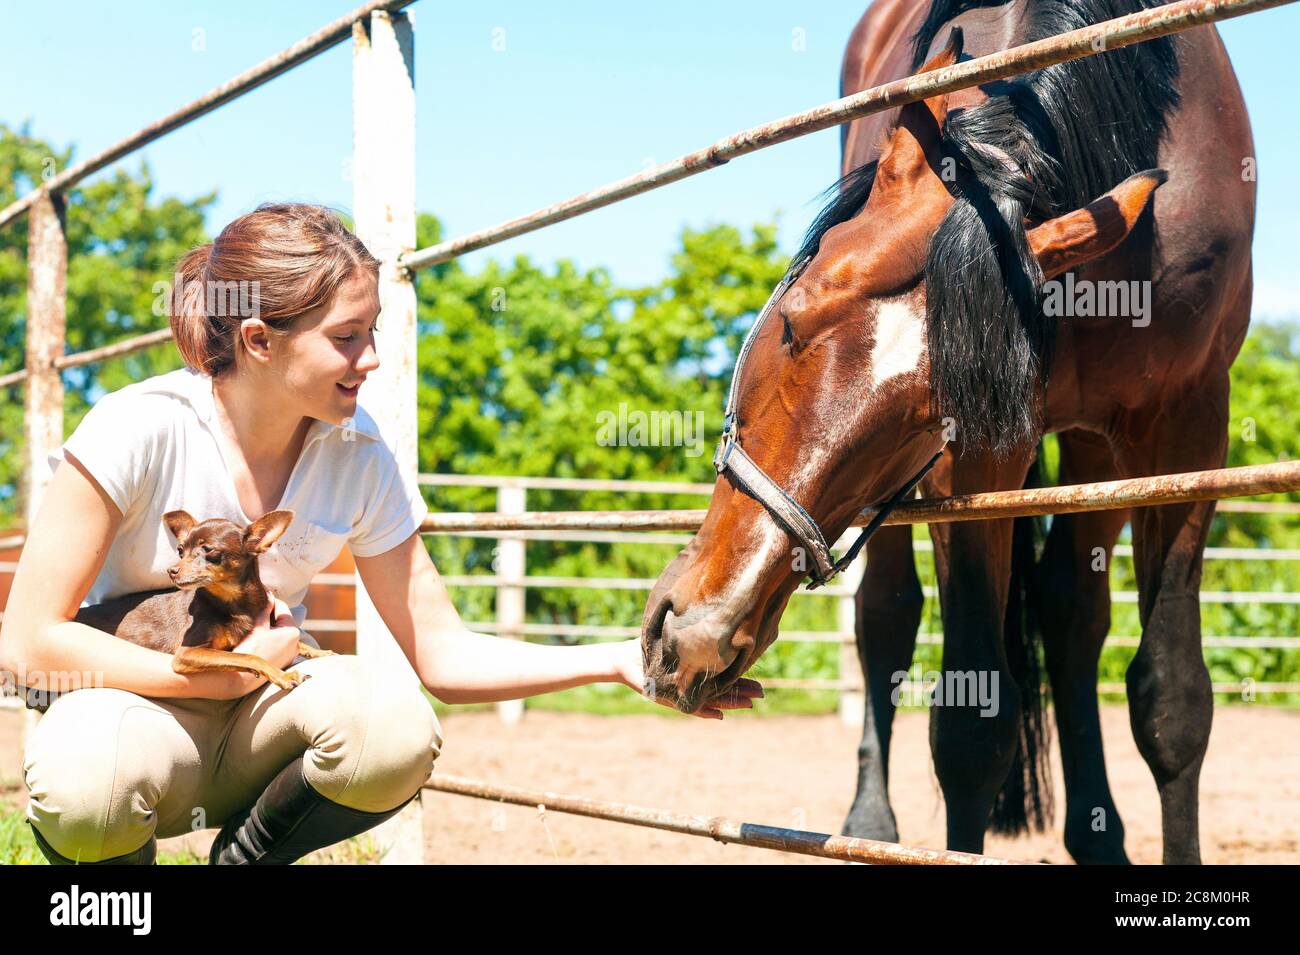 Giovane allegra adolescente ragazza rossa nutrendo il suo cavallo di castagno preferito e il suo cane piccolo. Immagine orizzontale esterna dai colori vivaci. Foto Stock